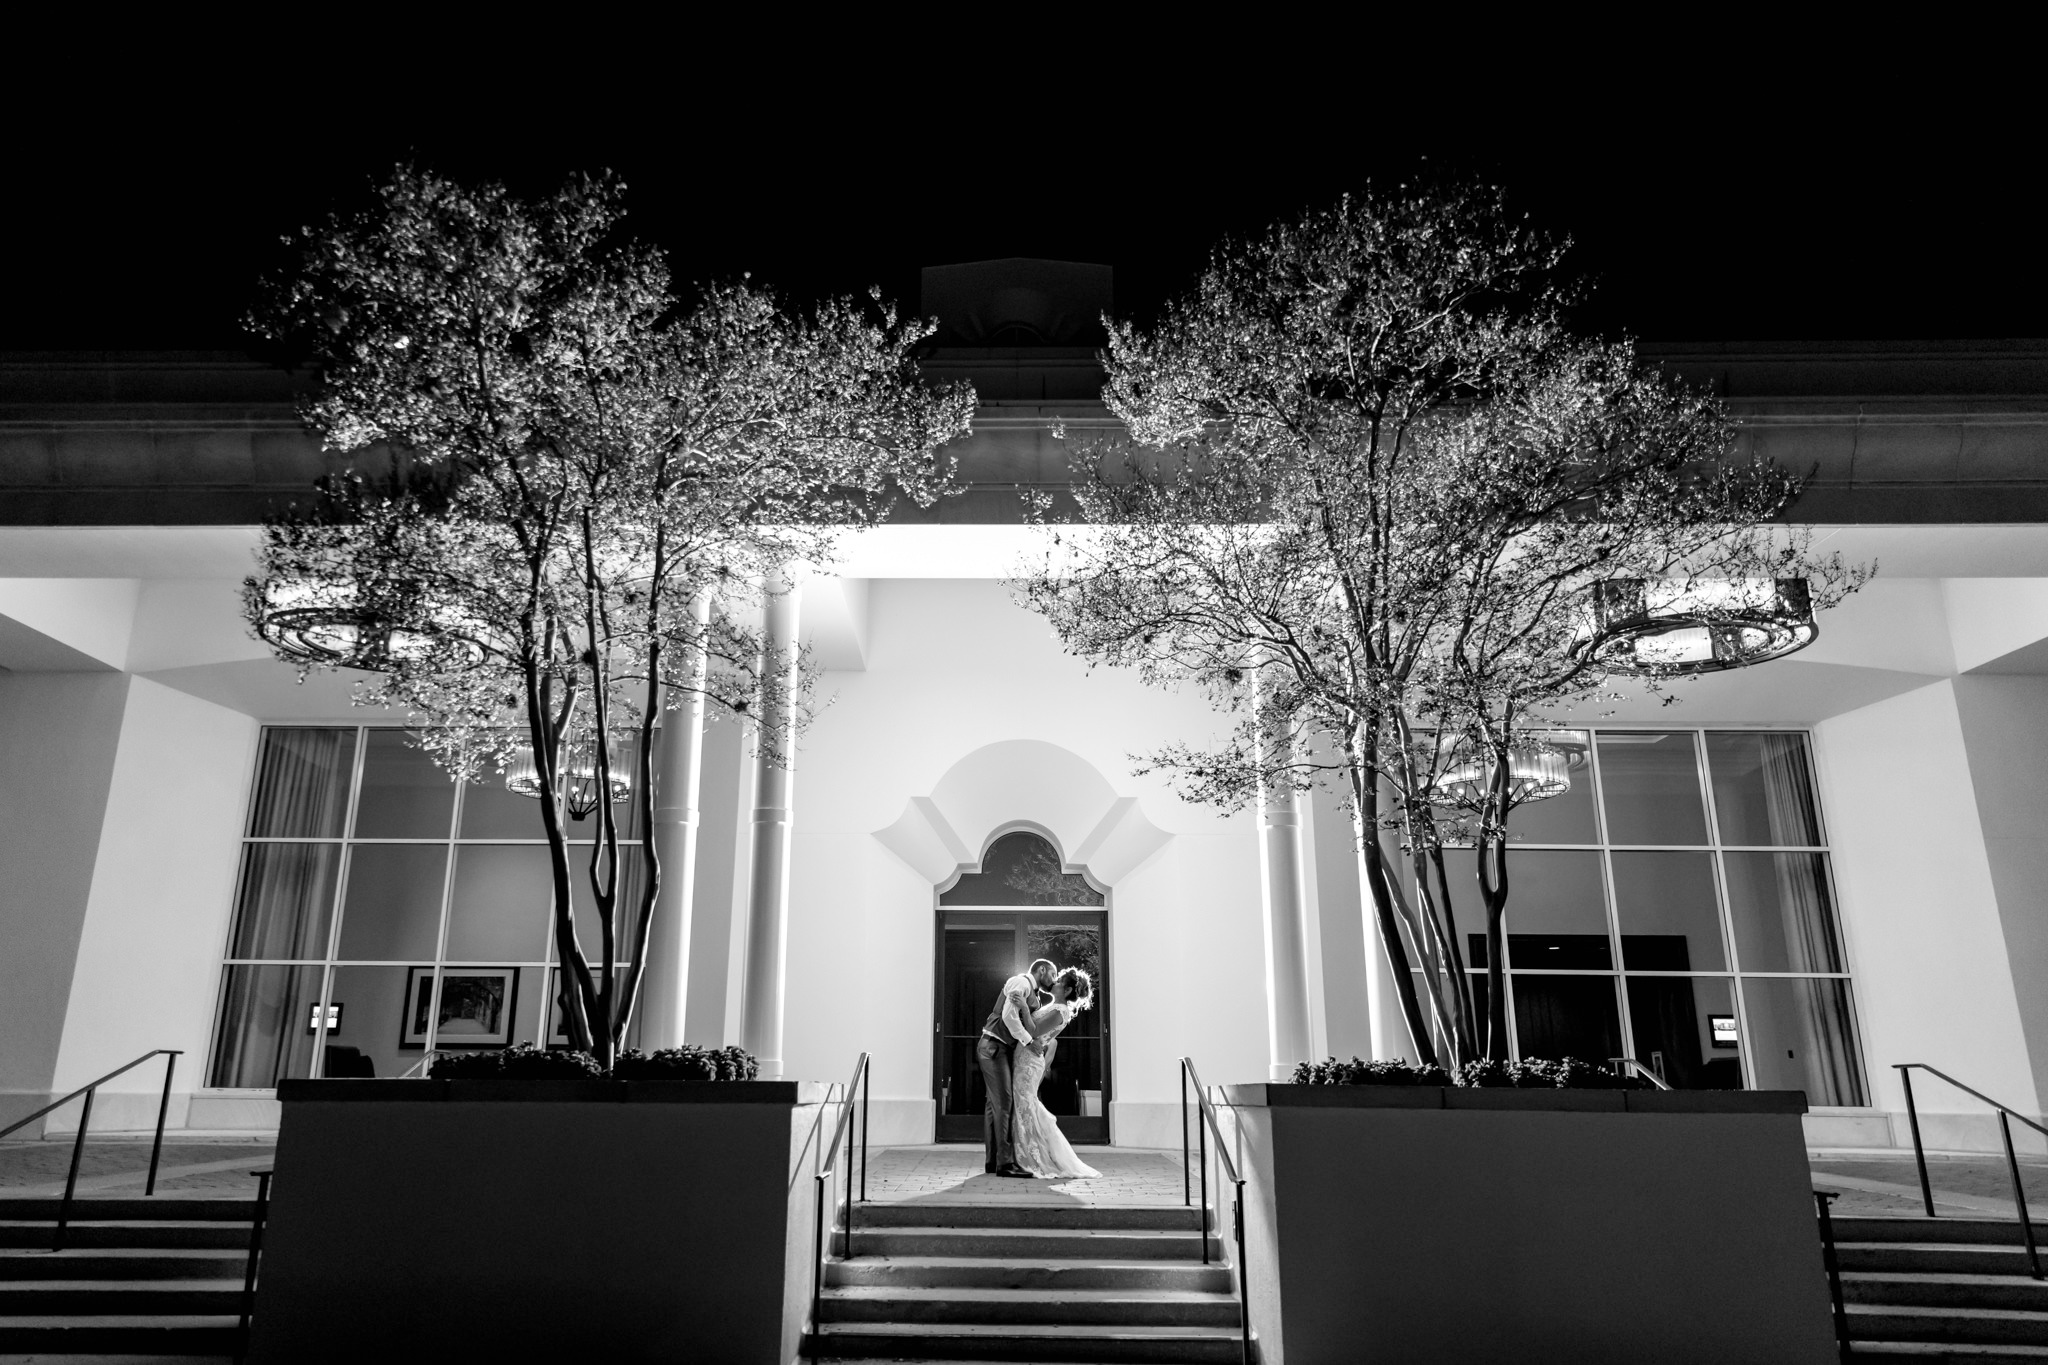 A Burgundy and Ivory Wedding at La Cantera Resort by Dawn Elizabeth Studios, San Antonio Wedding Photographer